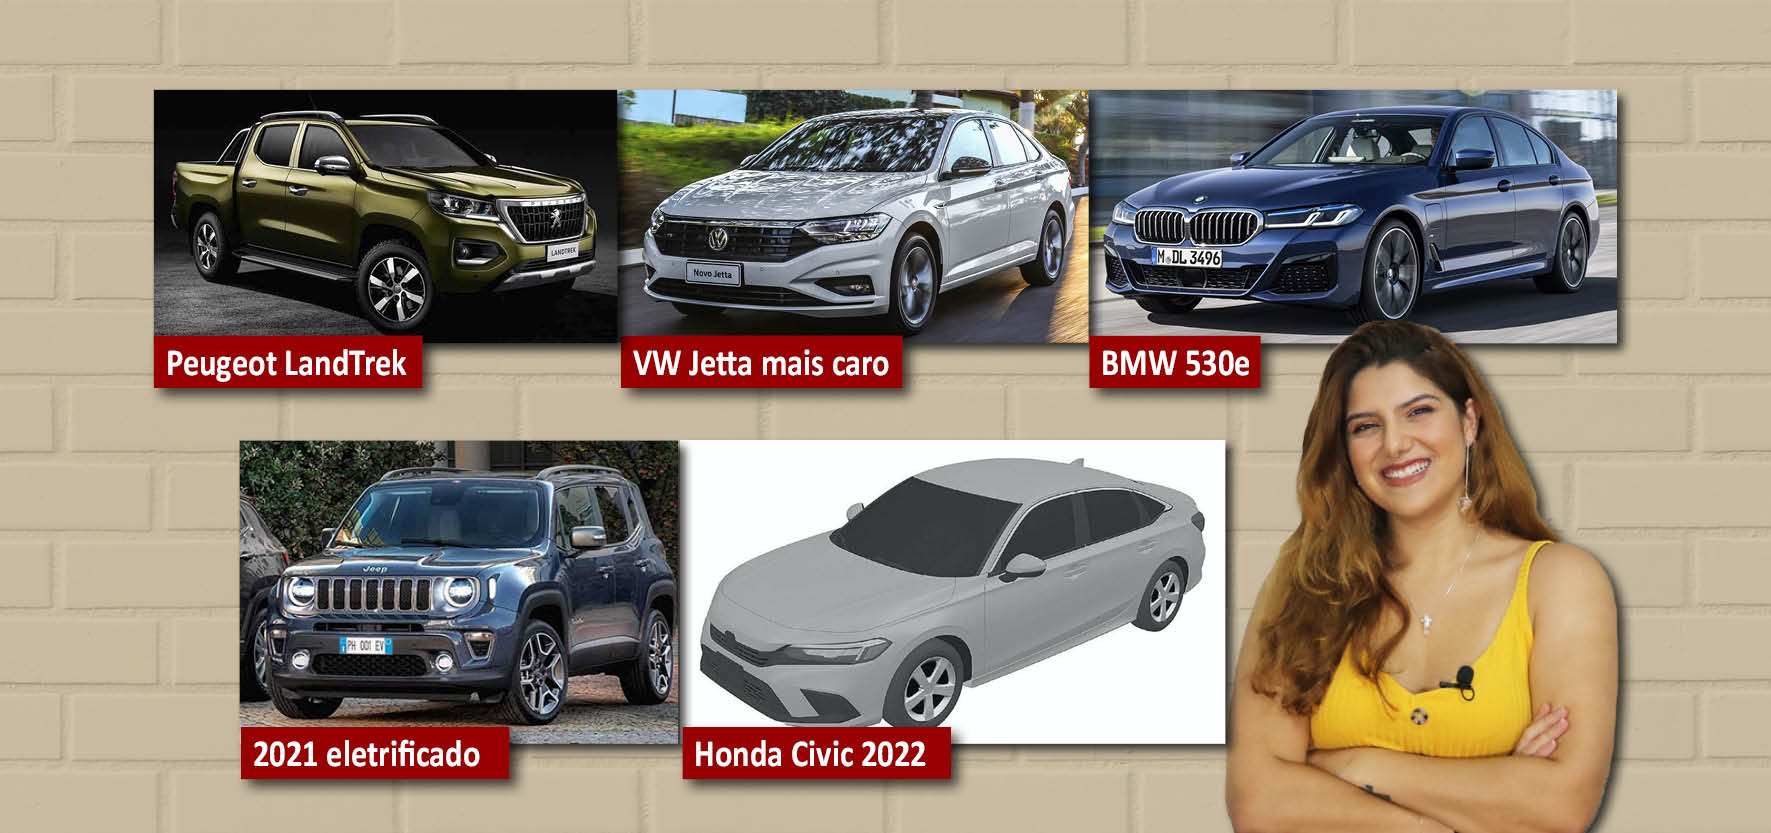 Honda Civic: modelo 2022 ou fim dos tempos?